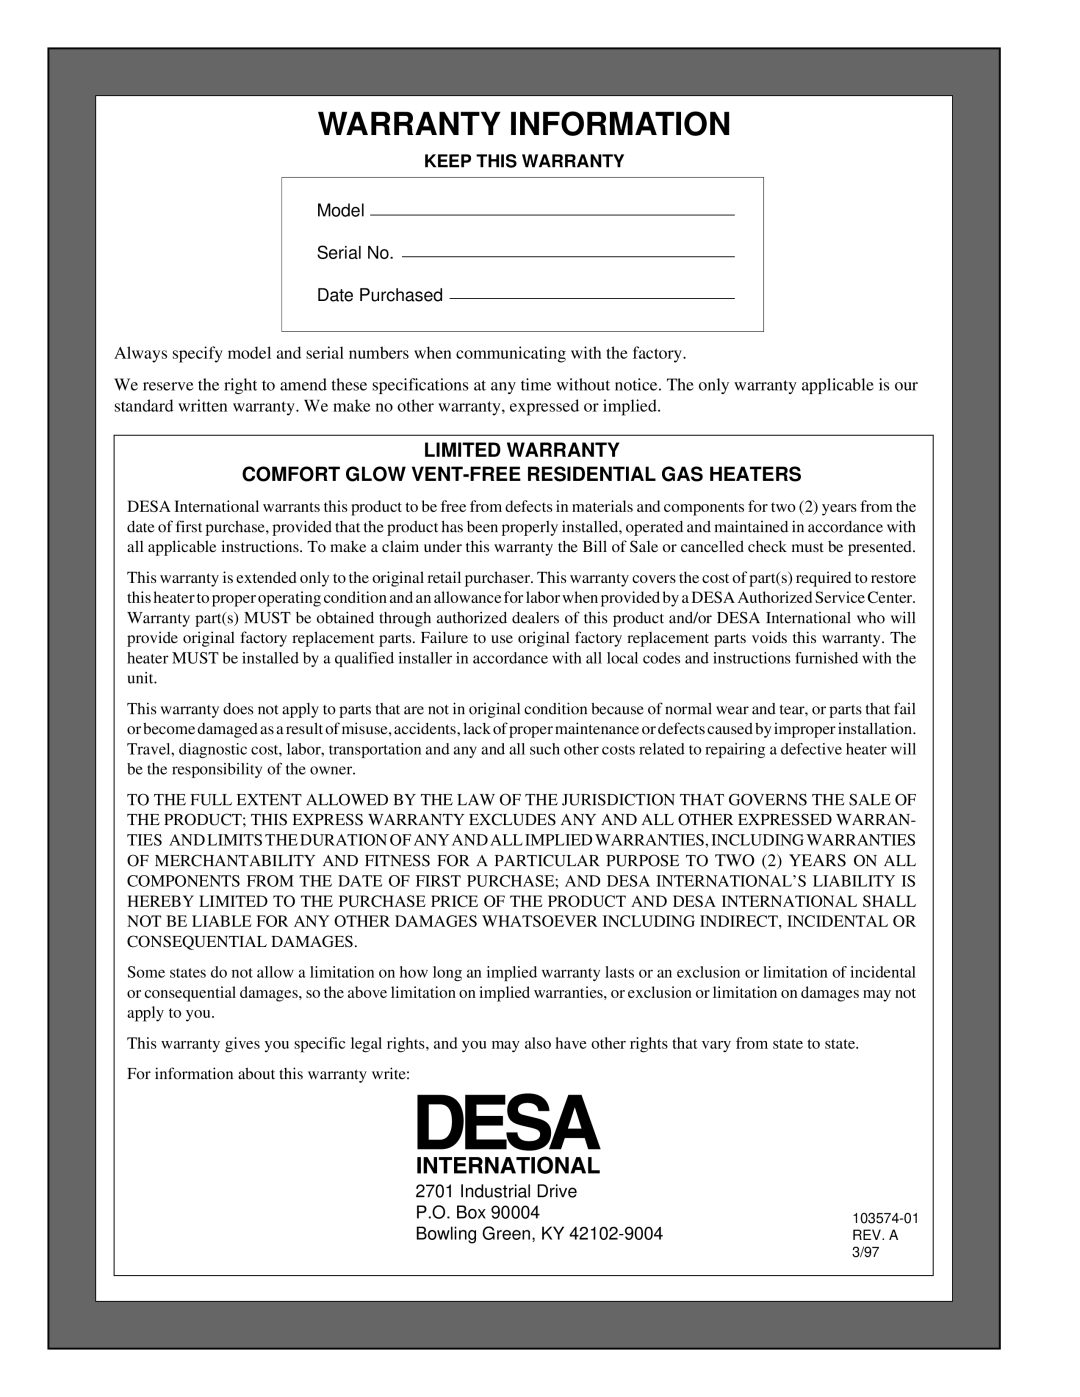 Desa Tech CGN10TL Warranty Information, Limited Warranty, Comfort Glow Vent-Freeresidential Gas Heaters 